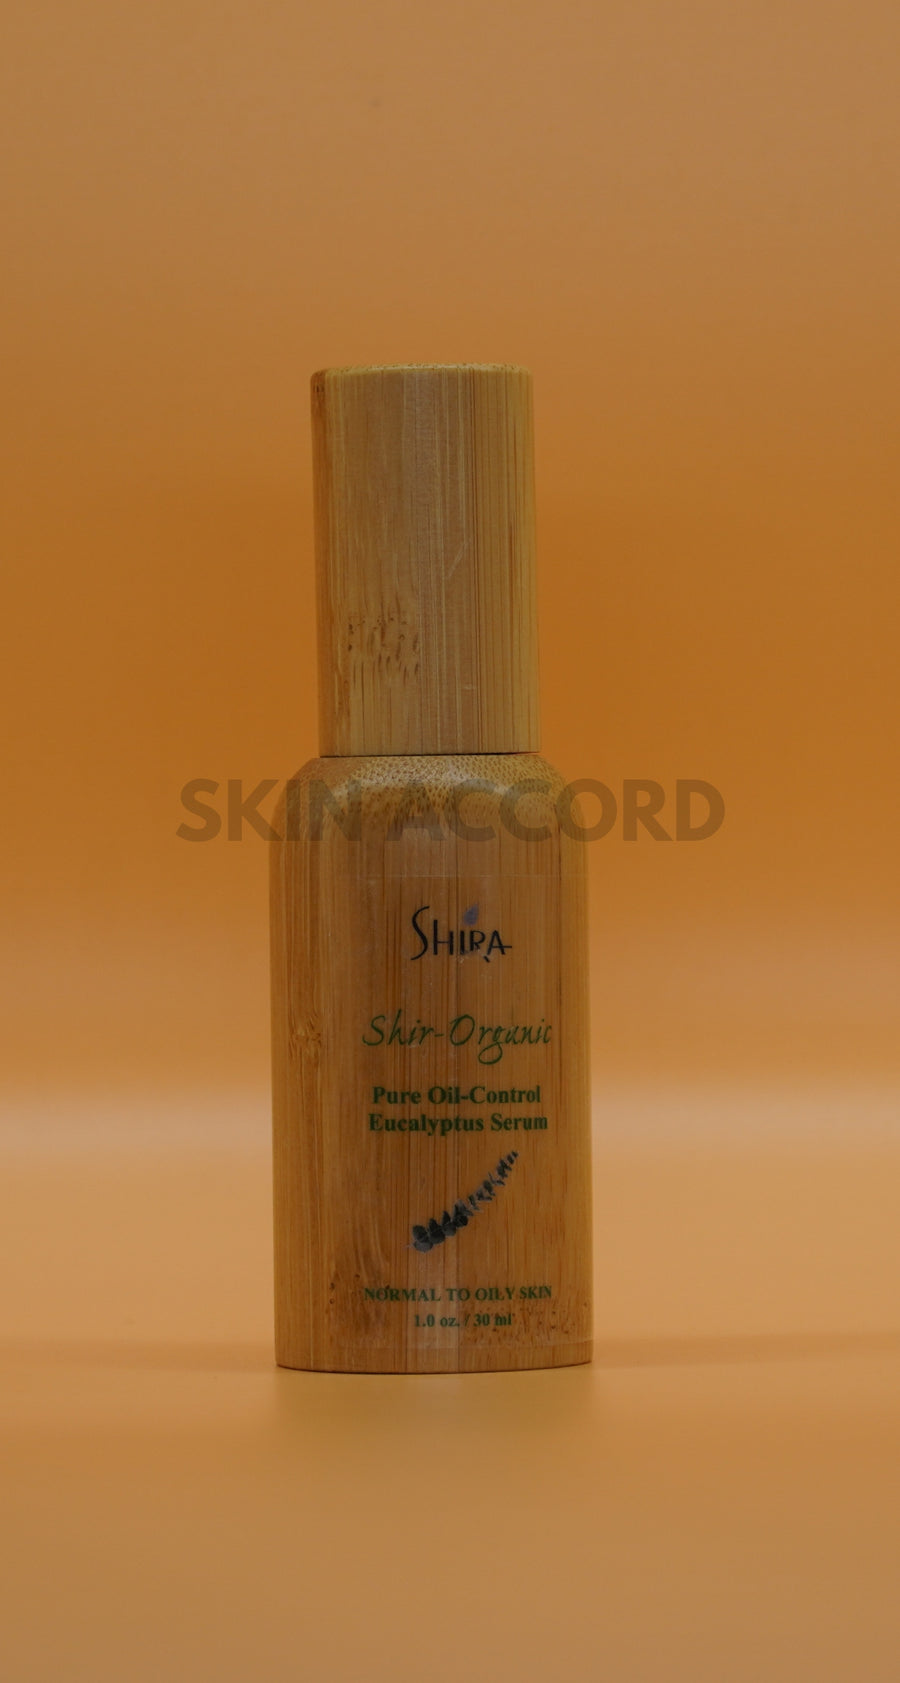 Shir-Organic Pure Eucalyptus Serum ( Normal to Oily)